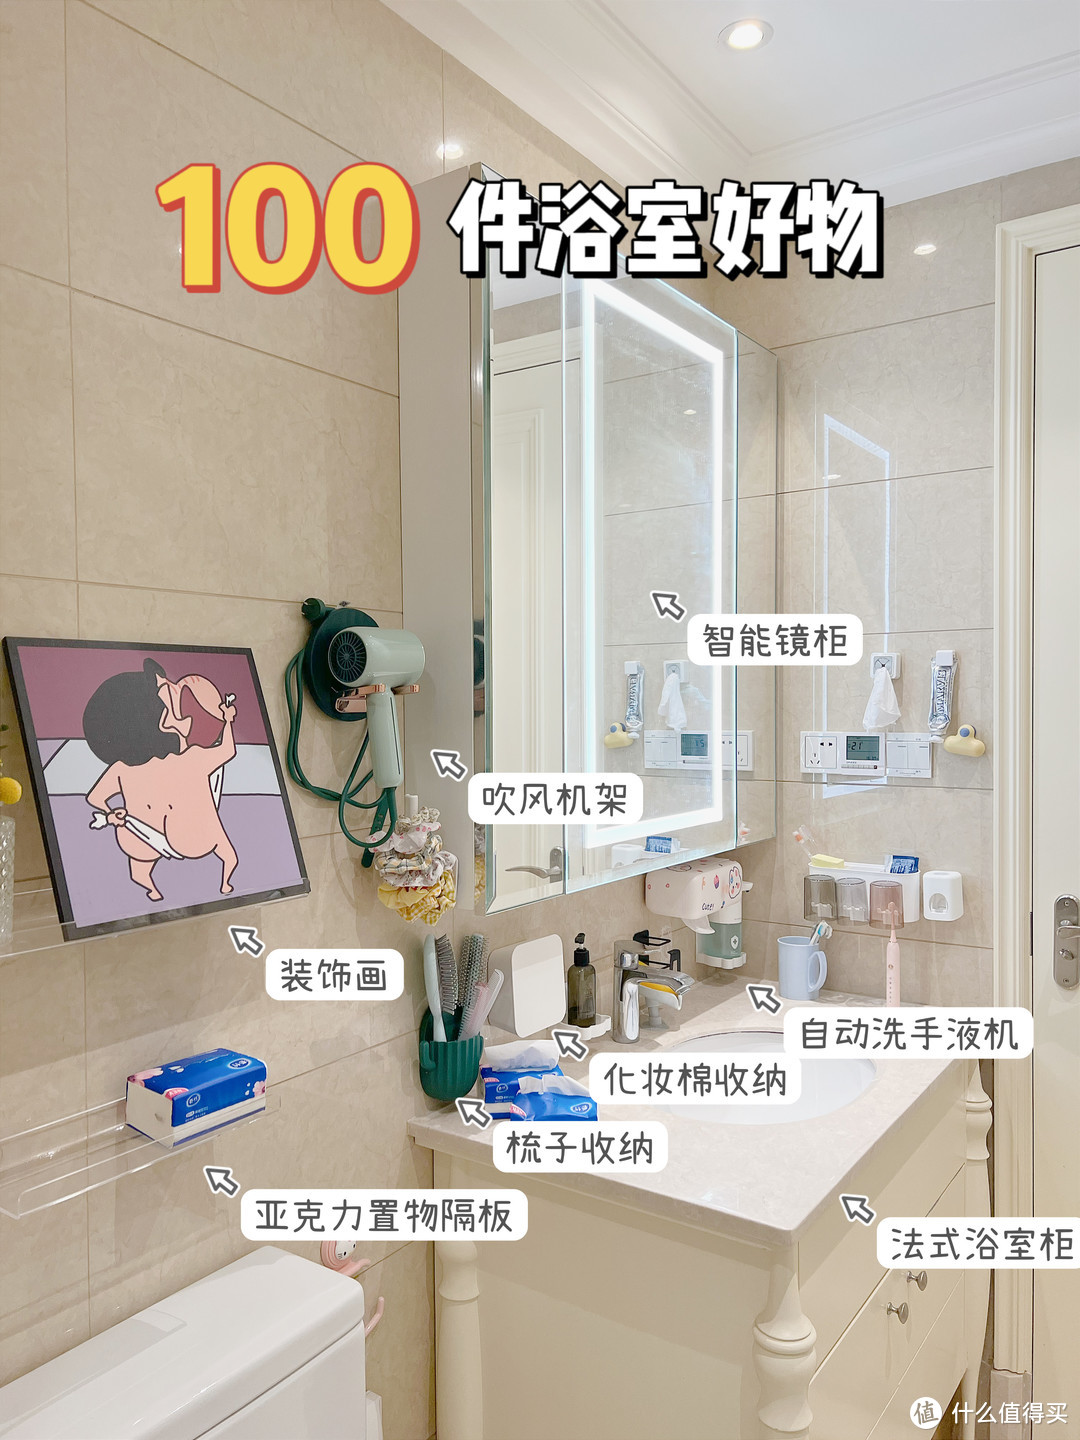 100件精致女生浴室好物💗提升如厕幸福感